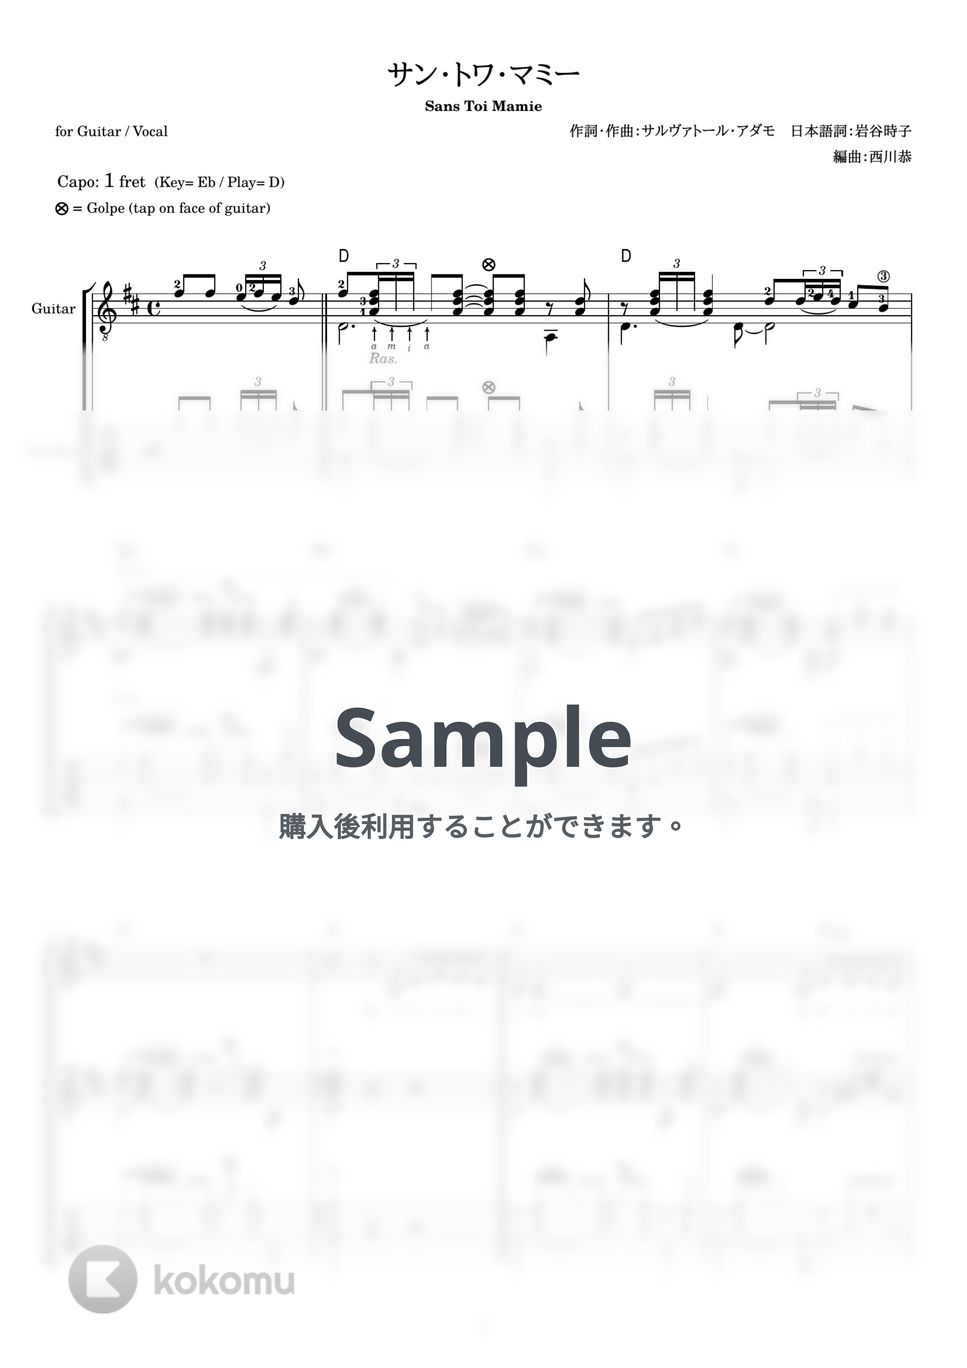 岸洋子 - サン・トワ・マミー (ギター伴奏 / 弾き語り) by 西川恭